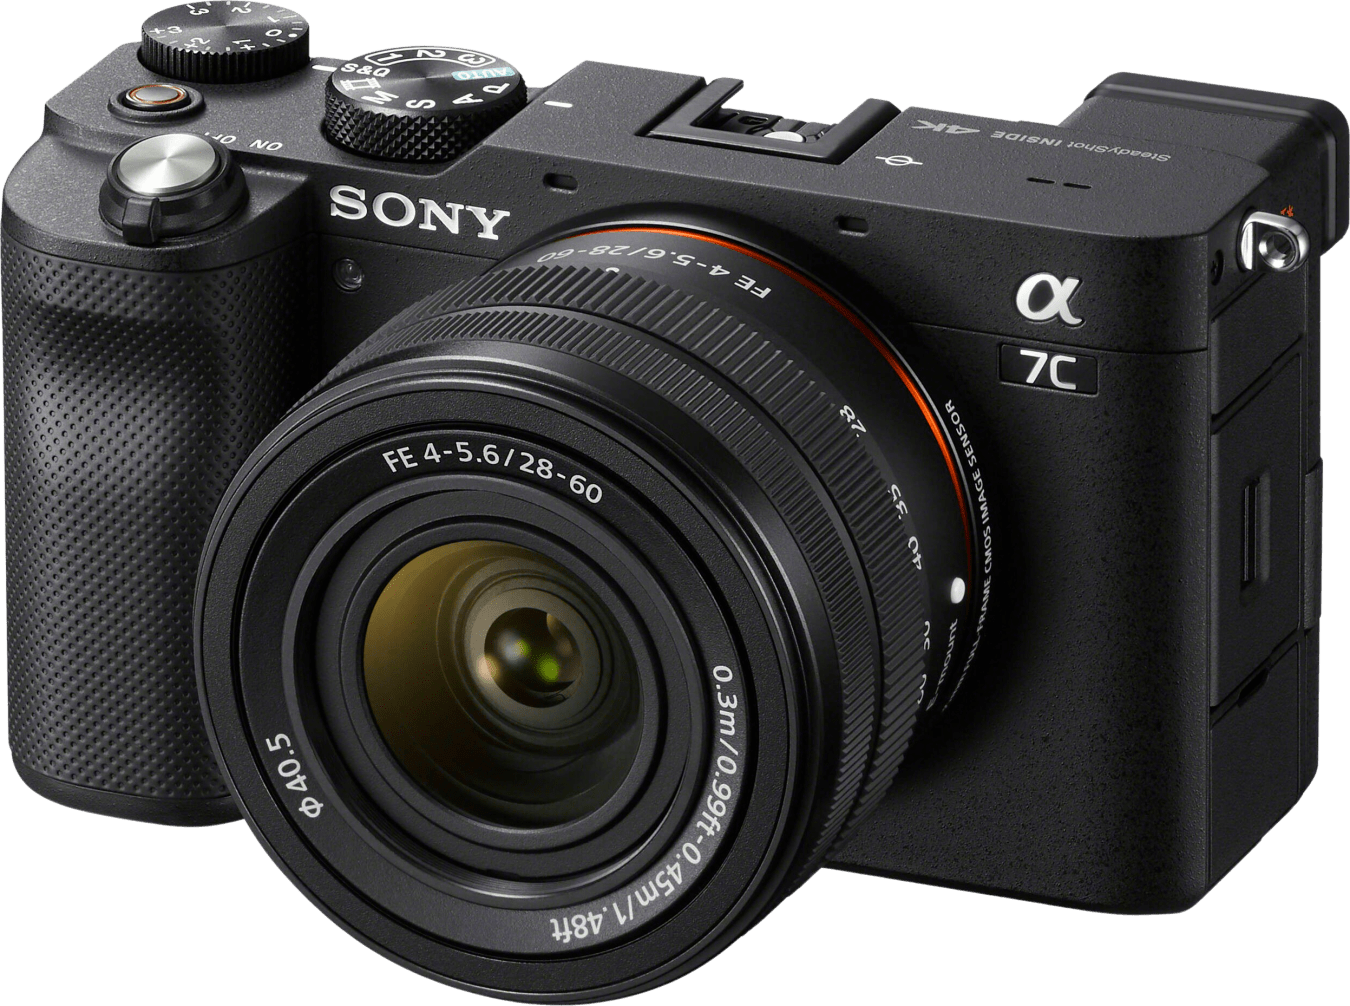 Sony Alpha A7C + 28-60mm f/4-5.6 objektiv Kit von Sony